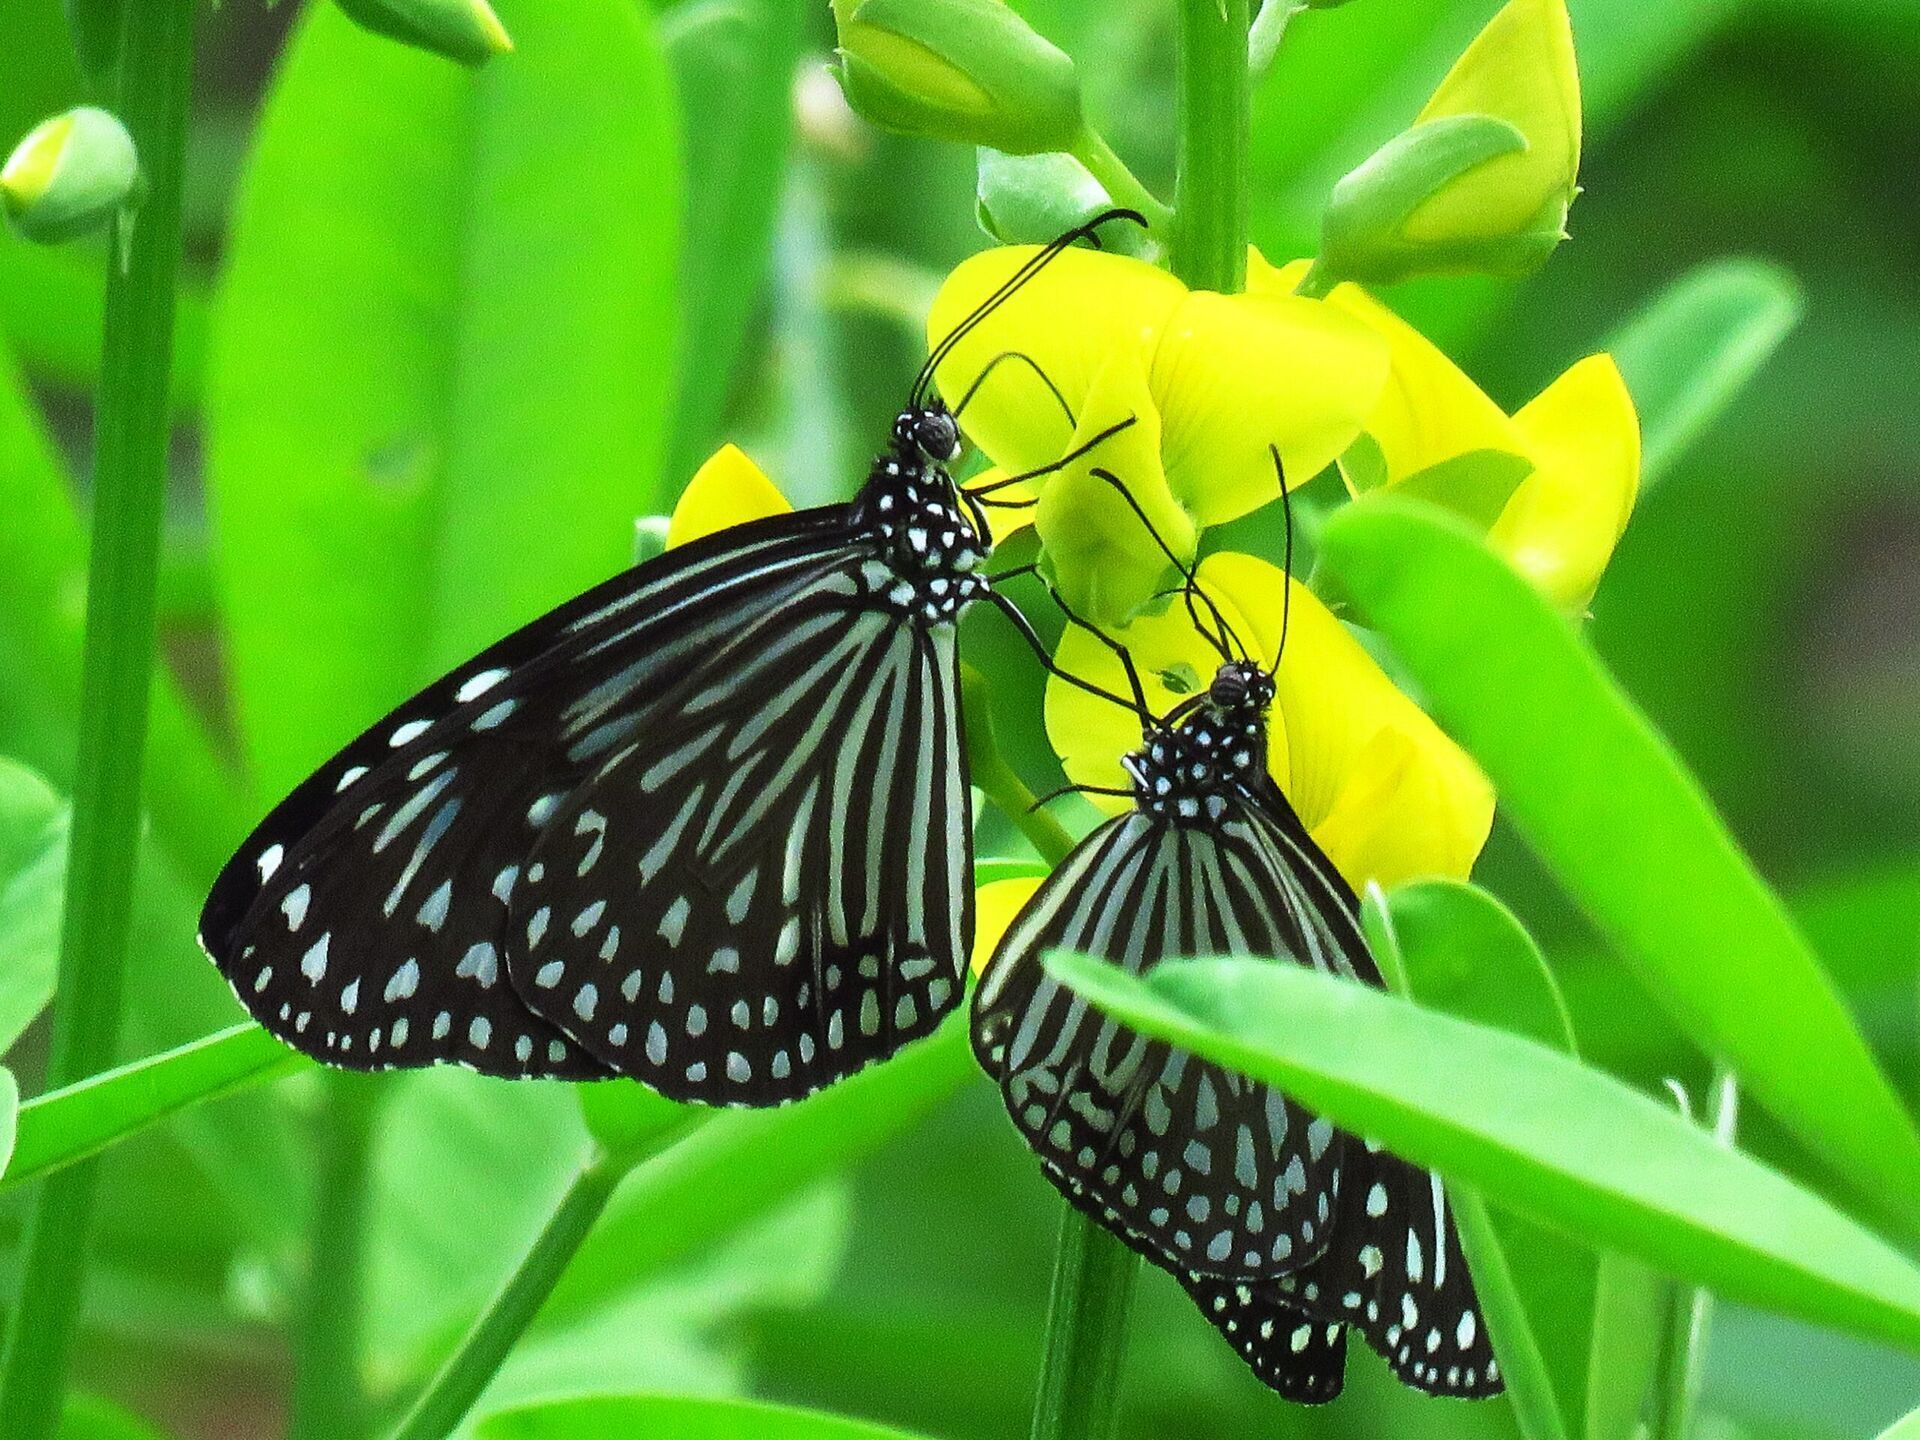 Zachwycające zjawisko migracji motyli w naszym ogrodzie